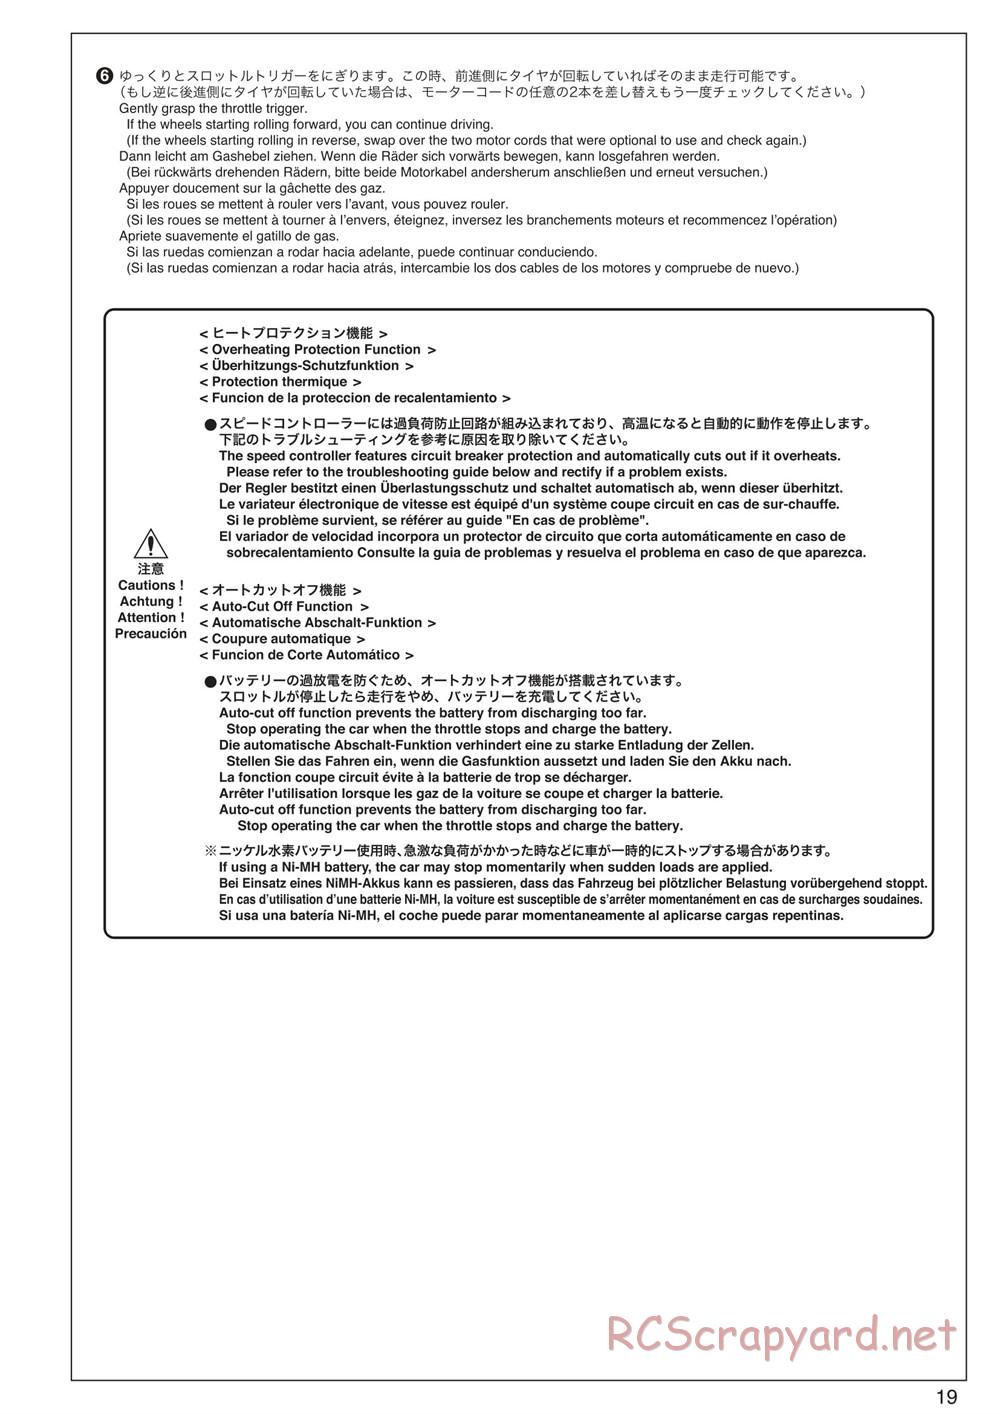 Kyosho - Scorpion XXL VE - Manual - Page 19